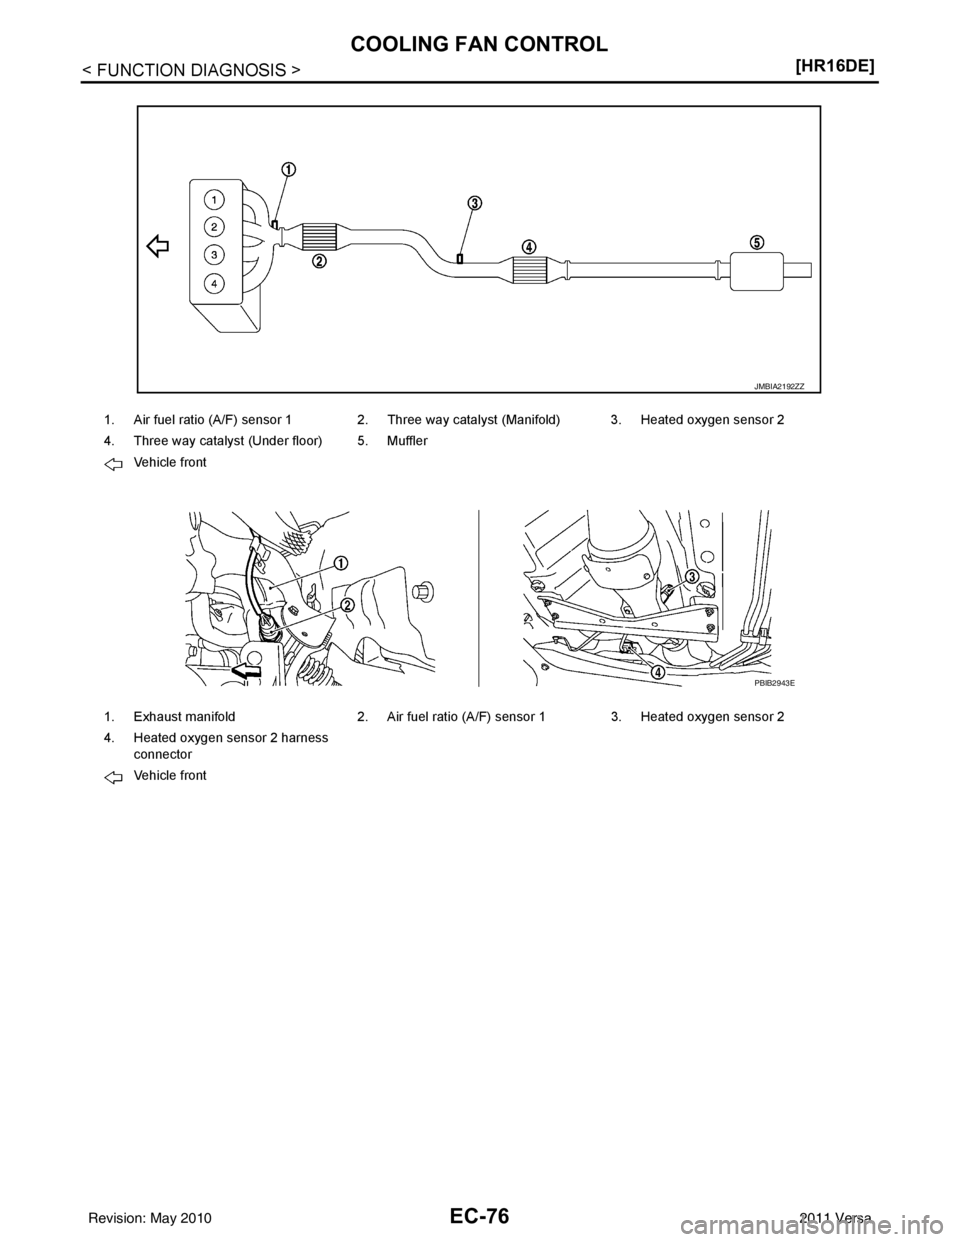 NISSAN TIIDA 2011  Service Repair Manual EC-76
< FUNCTION DIAGNOSIS >[HR16DE]
COOLING FAN CONTROL
1. Air fuel ratio (A/F) sensor 1 2. Three way catalyst (Manifold) 3. Heated oxygen sensor 2
4. Three way catalyst (Under floor) 5. Muffler
Vehi